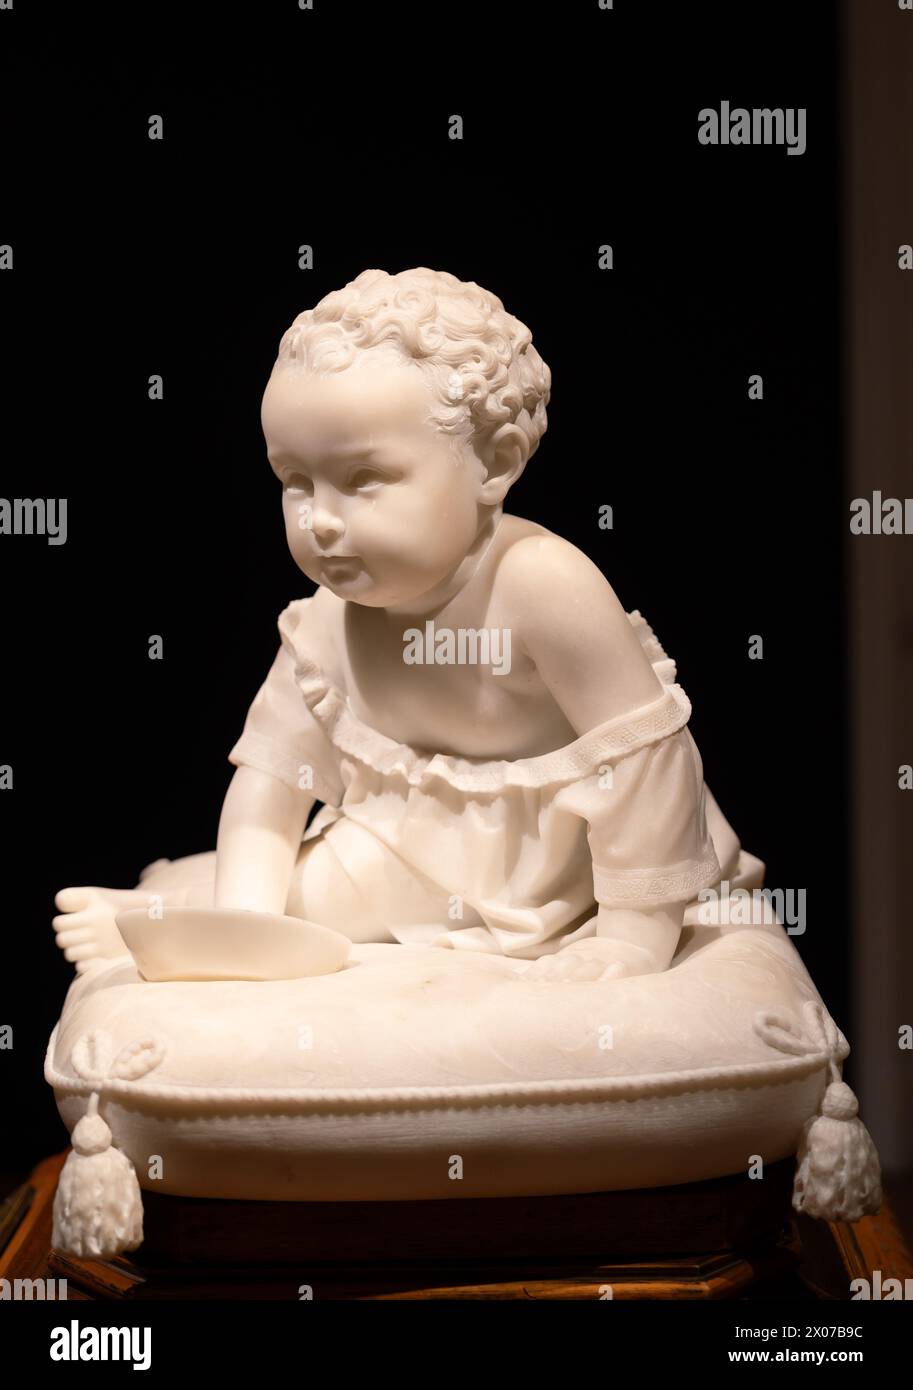 Statue en marbre de bébé garçon dans une robe assise sur un coussin Banque D'Images